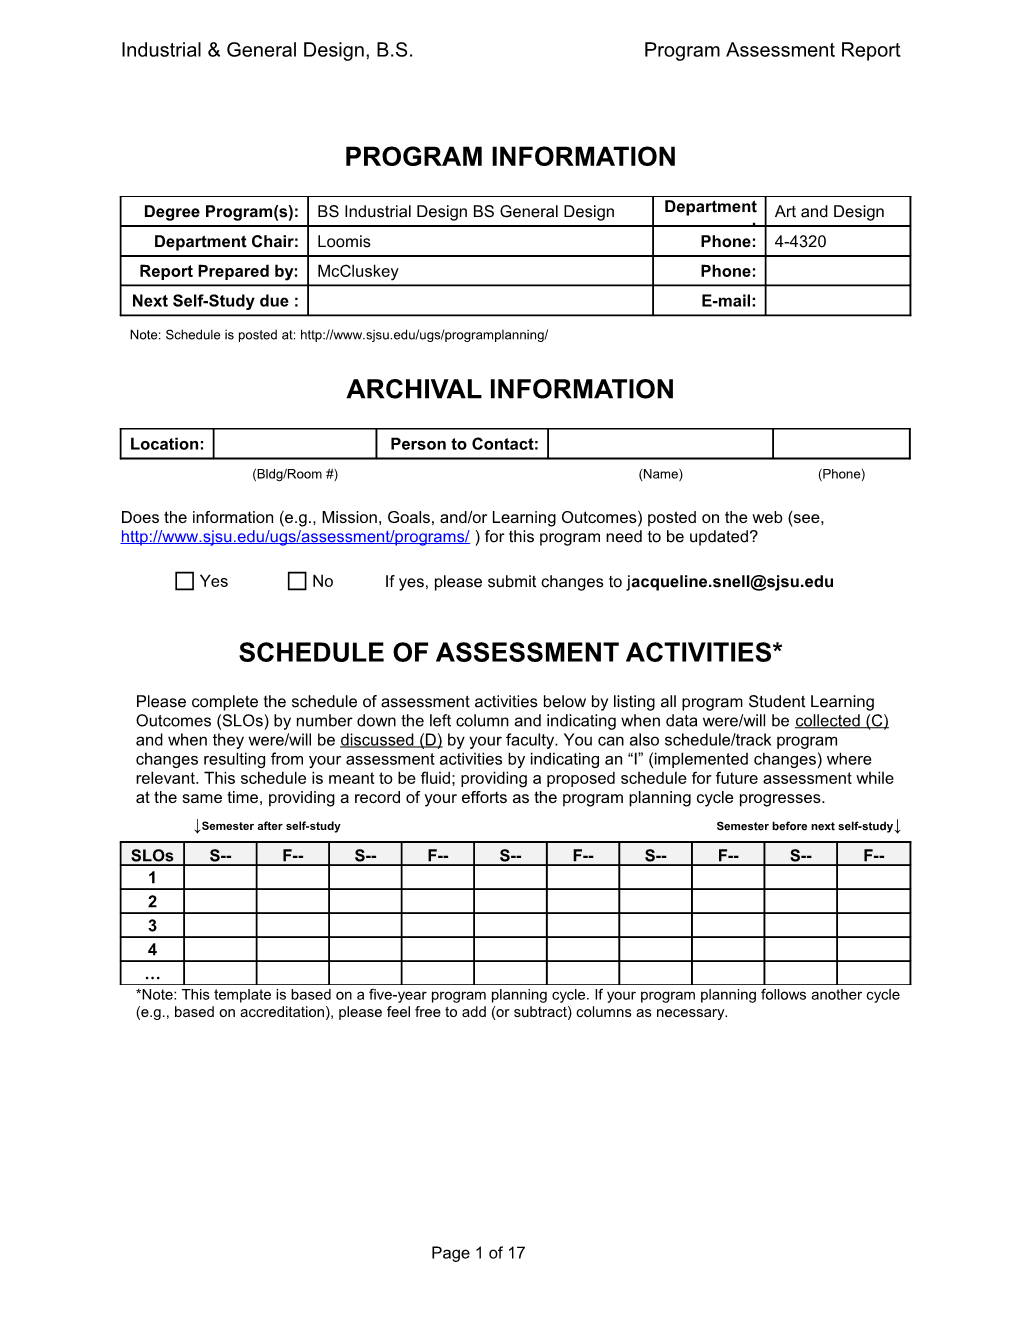 Fall 2007 Semester Program Assessment Report - ALTERNATE s2